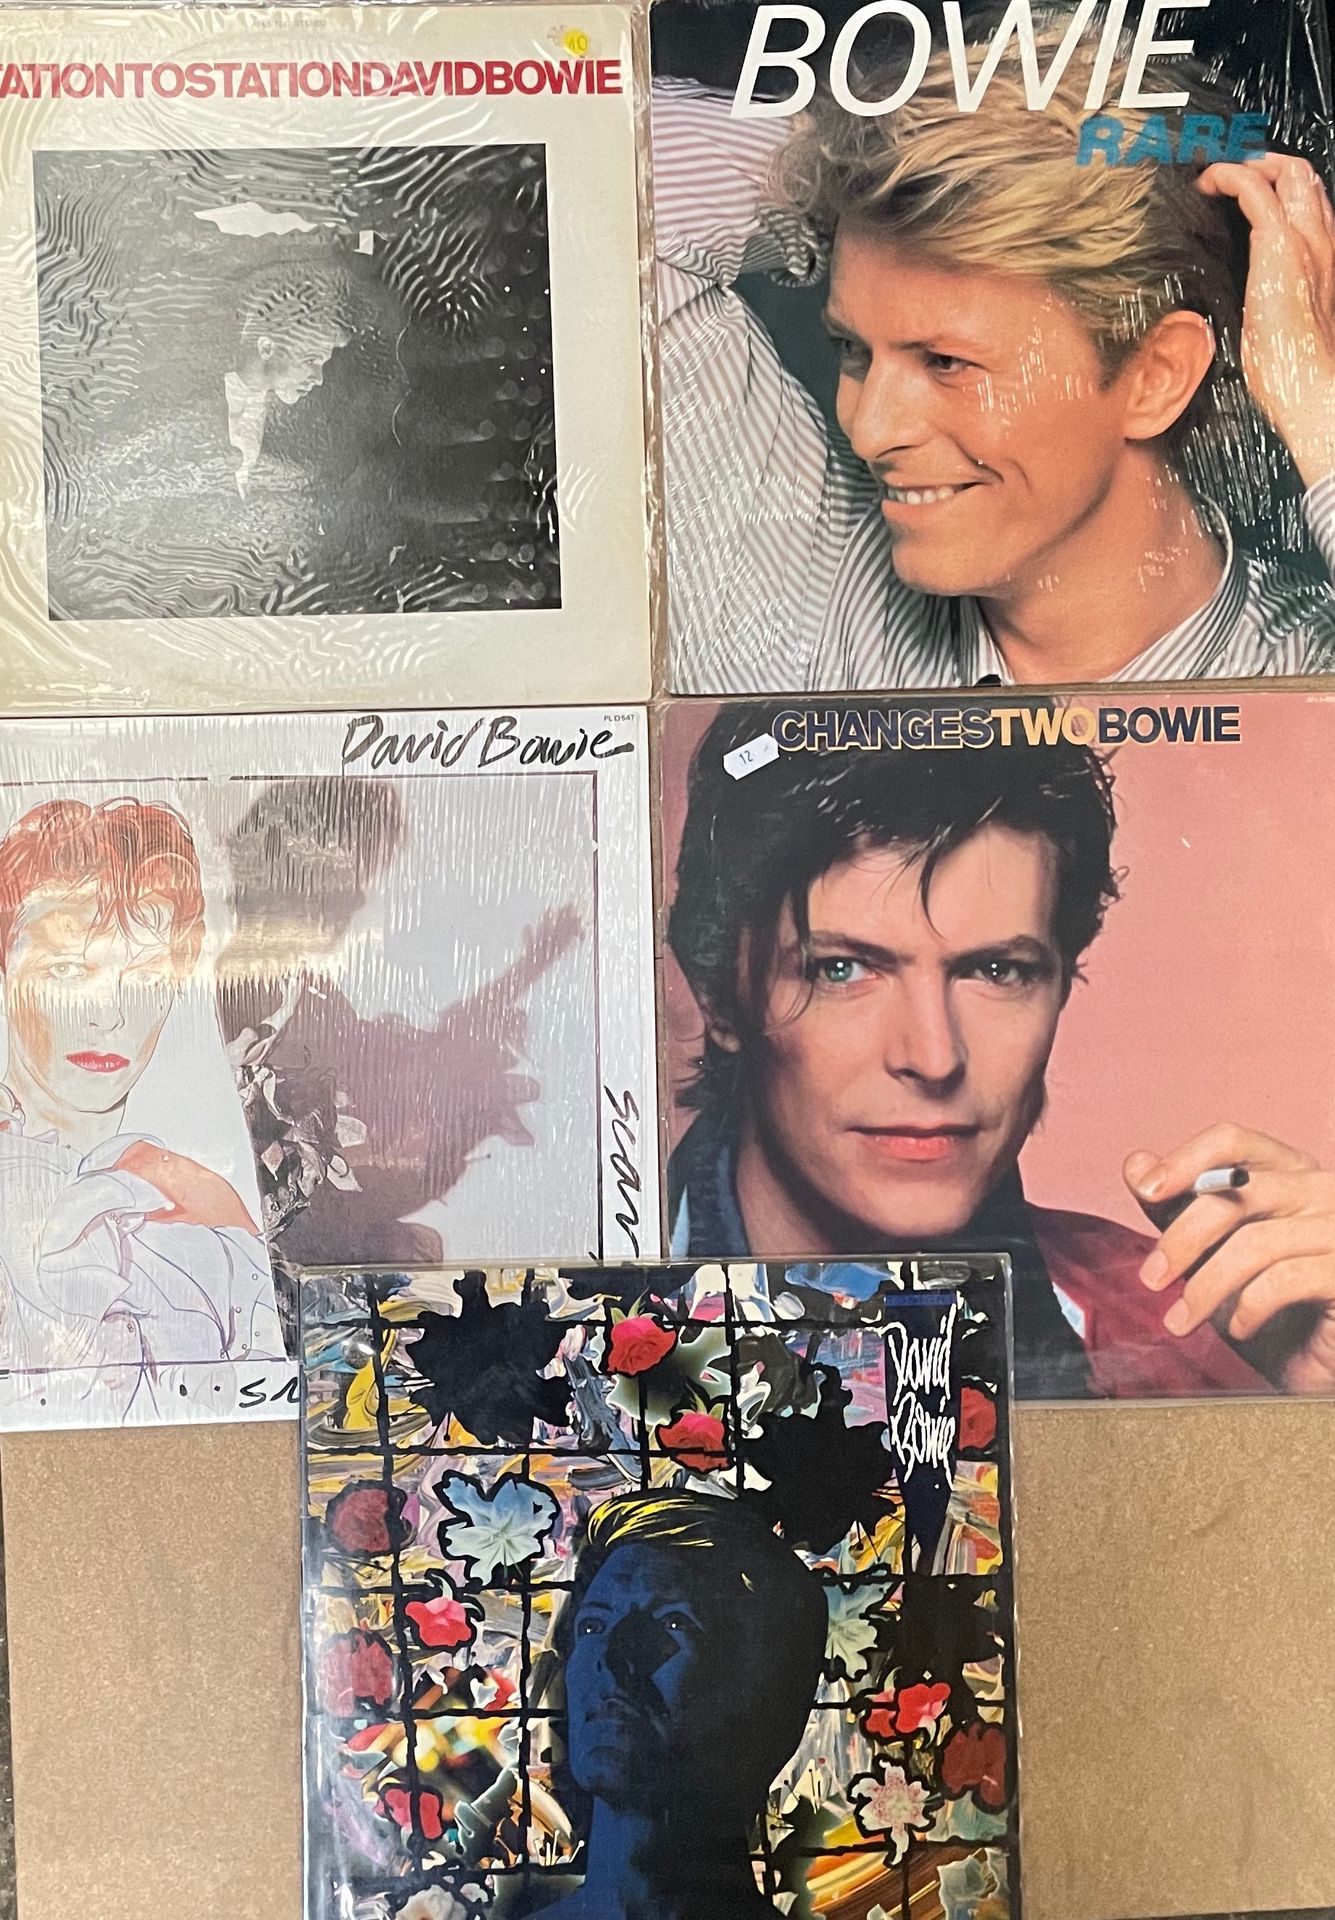 Null Cinque LP - David Bowie

Da VG+ a EX; da VG+ a EX